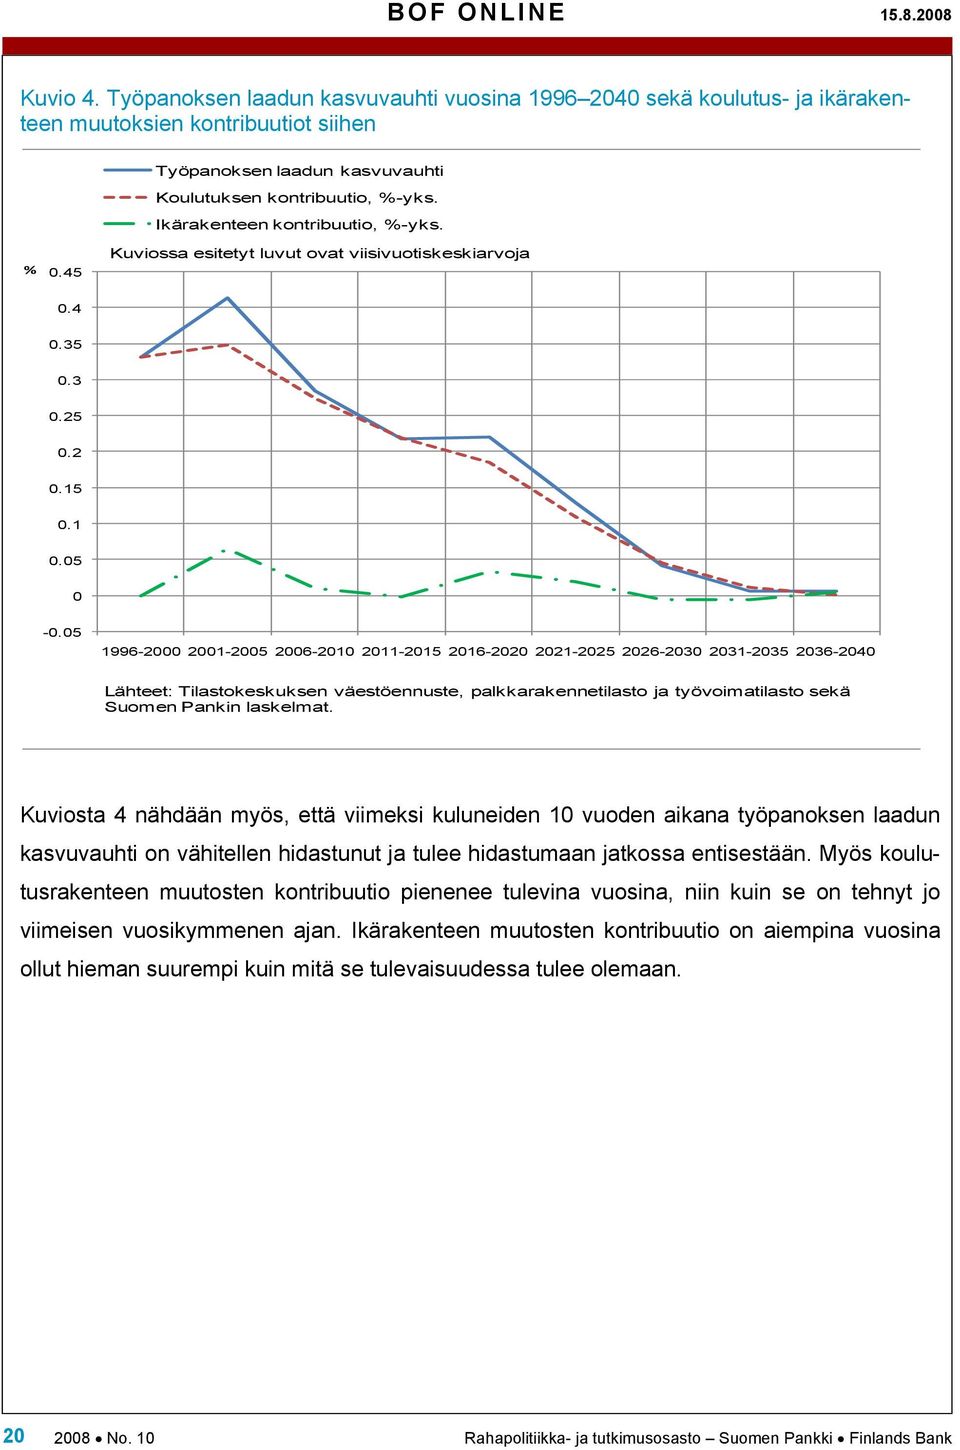 05 1996-2000 2001-2005 2006-2010 2011-2015 2016-2020 2021-2025 2026-2030 2031-2035 2036-2040 Lähee: Tilasokeskuksen väesöennuse, palkkarakenneilaso ja yövoimailaso sekä Suomen Pankin laskelma.